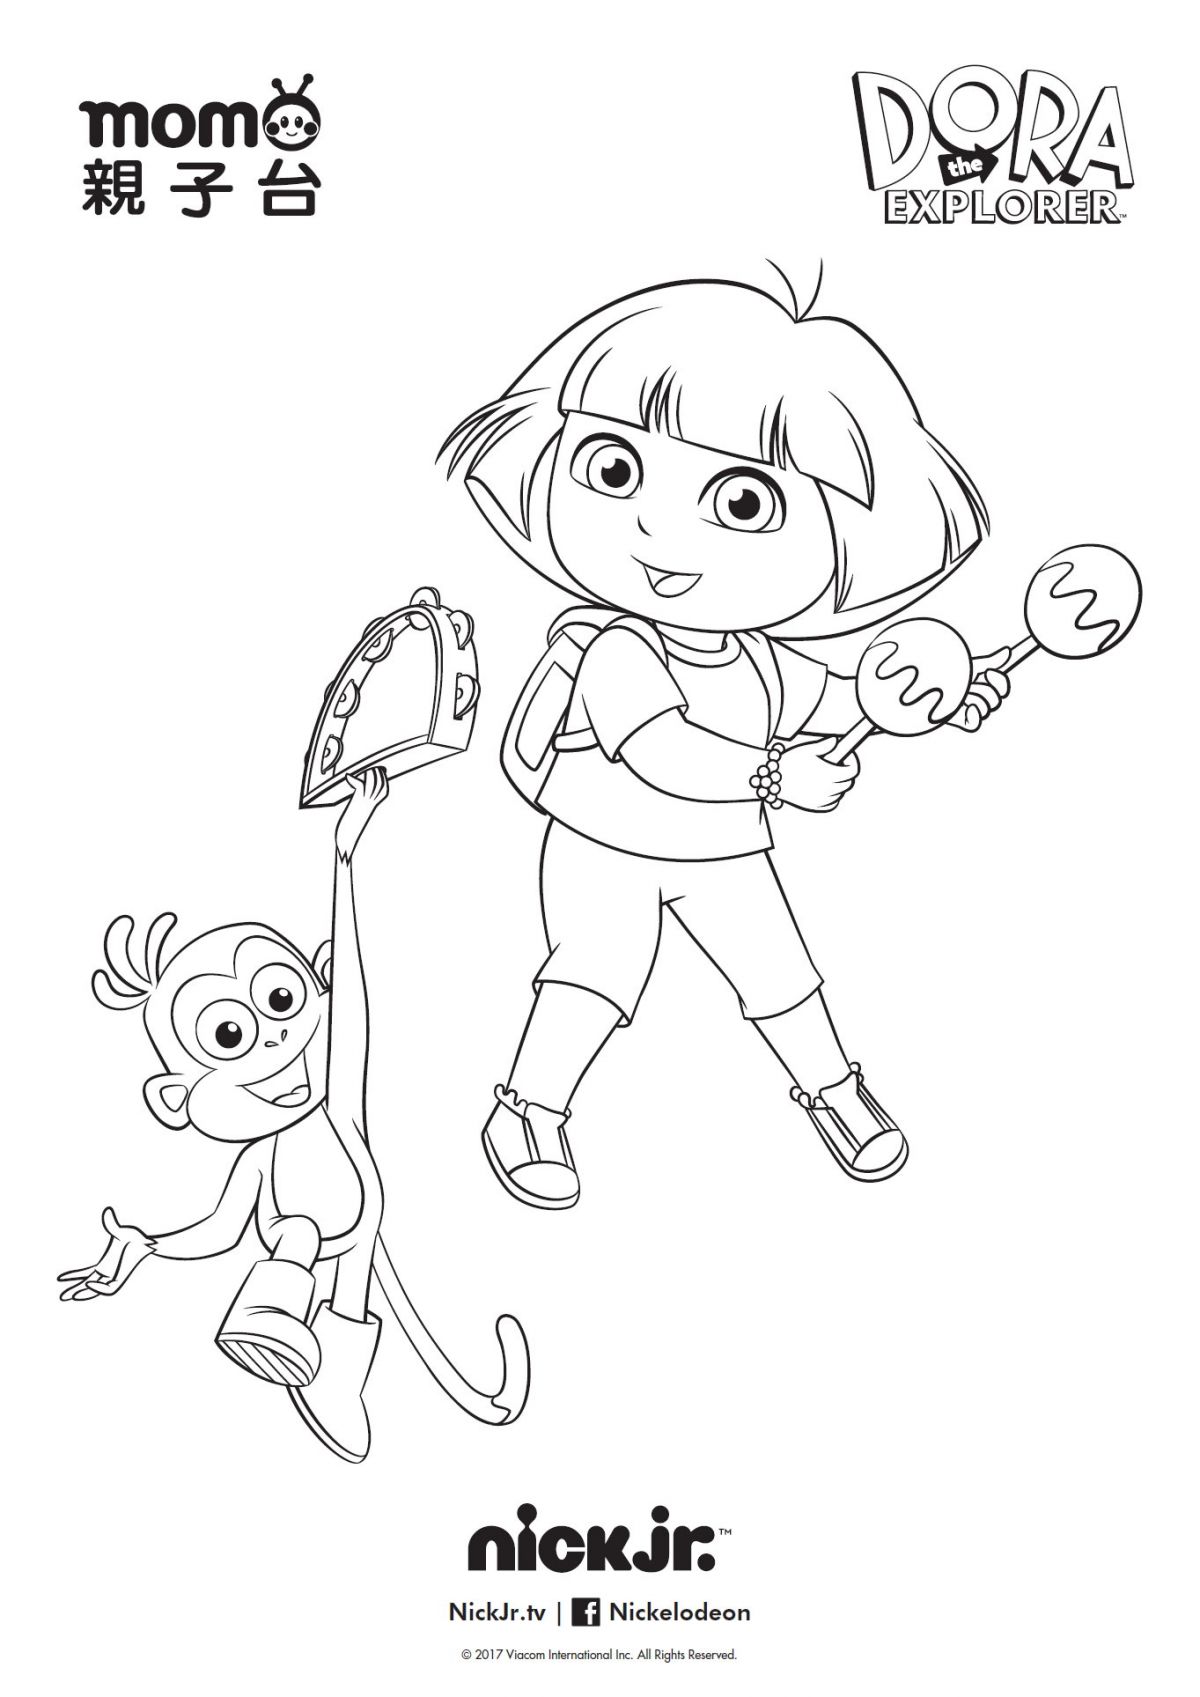 愛探險的Dora